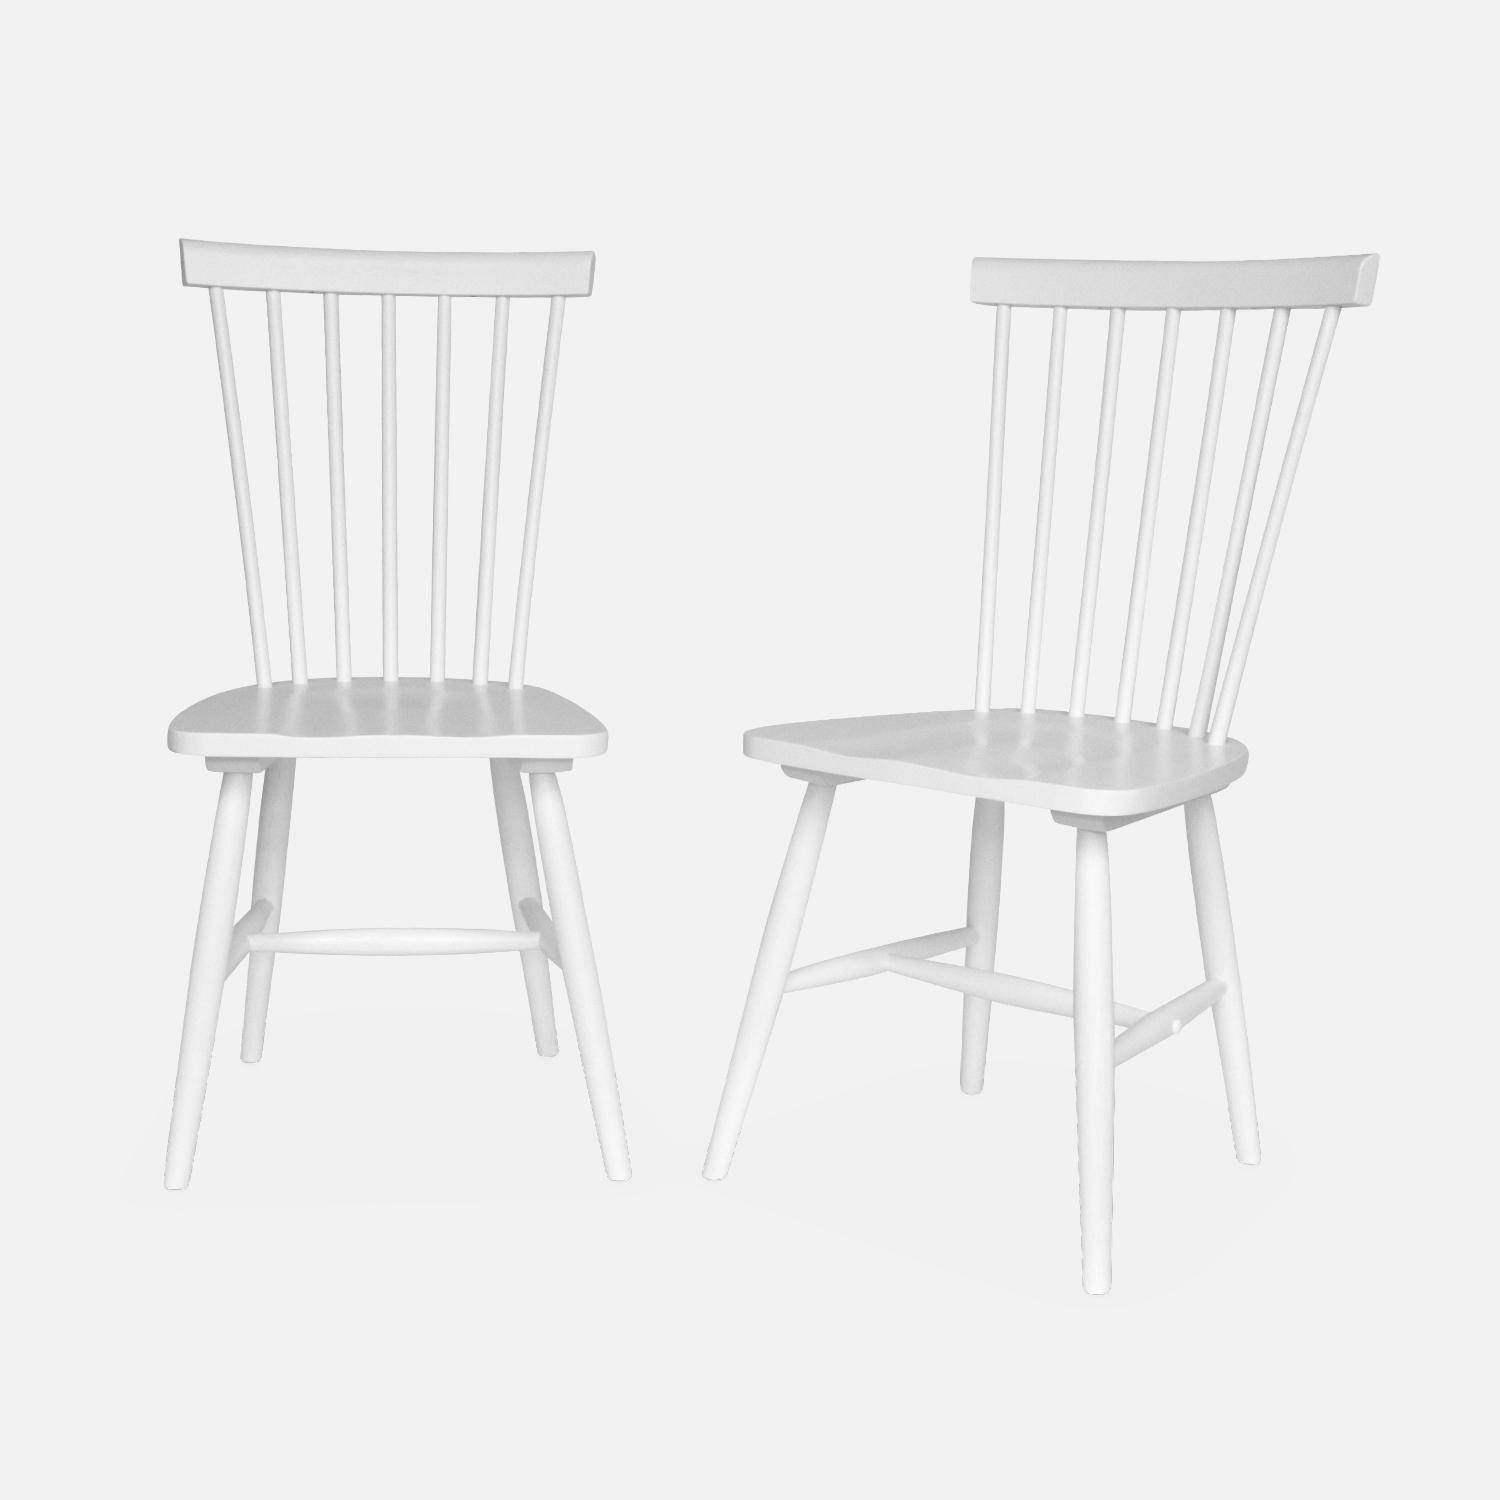 Lot de 2 chaises blanches à barreaux en bois d'hévéa, ROMIE, L 50,8 x P 44,2 x H 90cm. Livraison offerte, garantie 2 ans, meilleur prix garanti !  Photo3